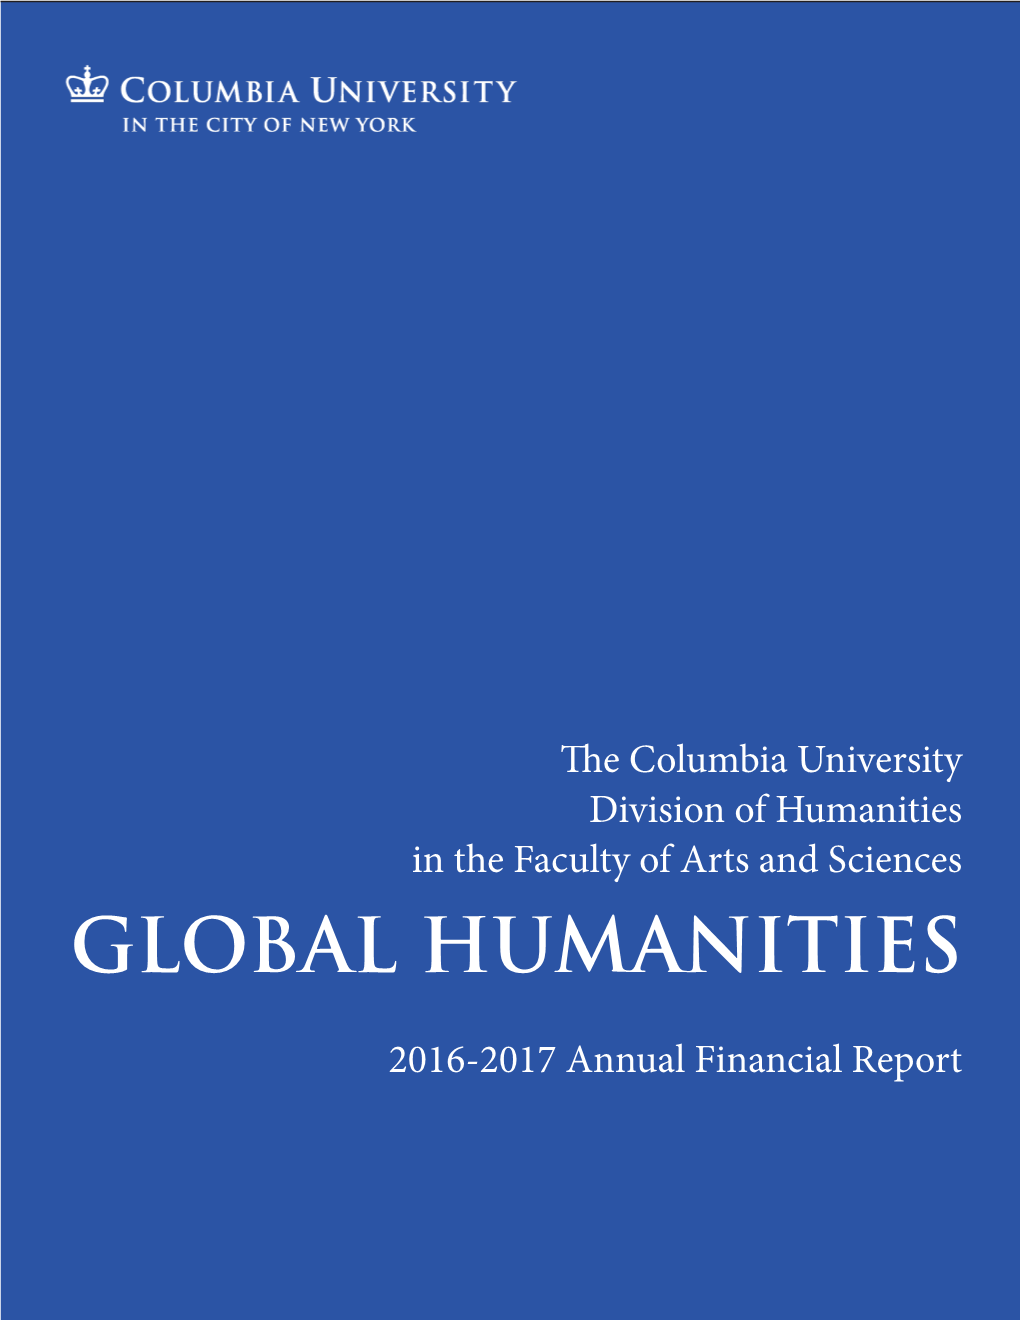 Global Humanities